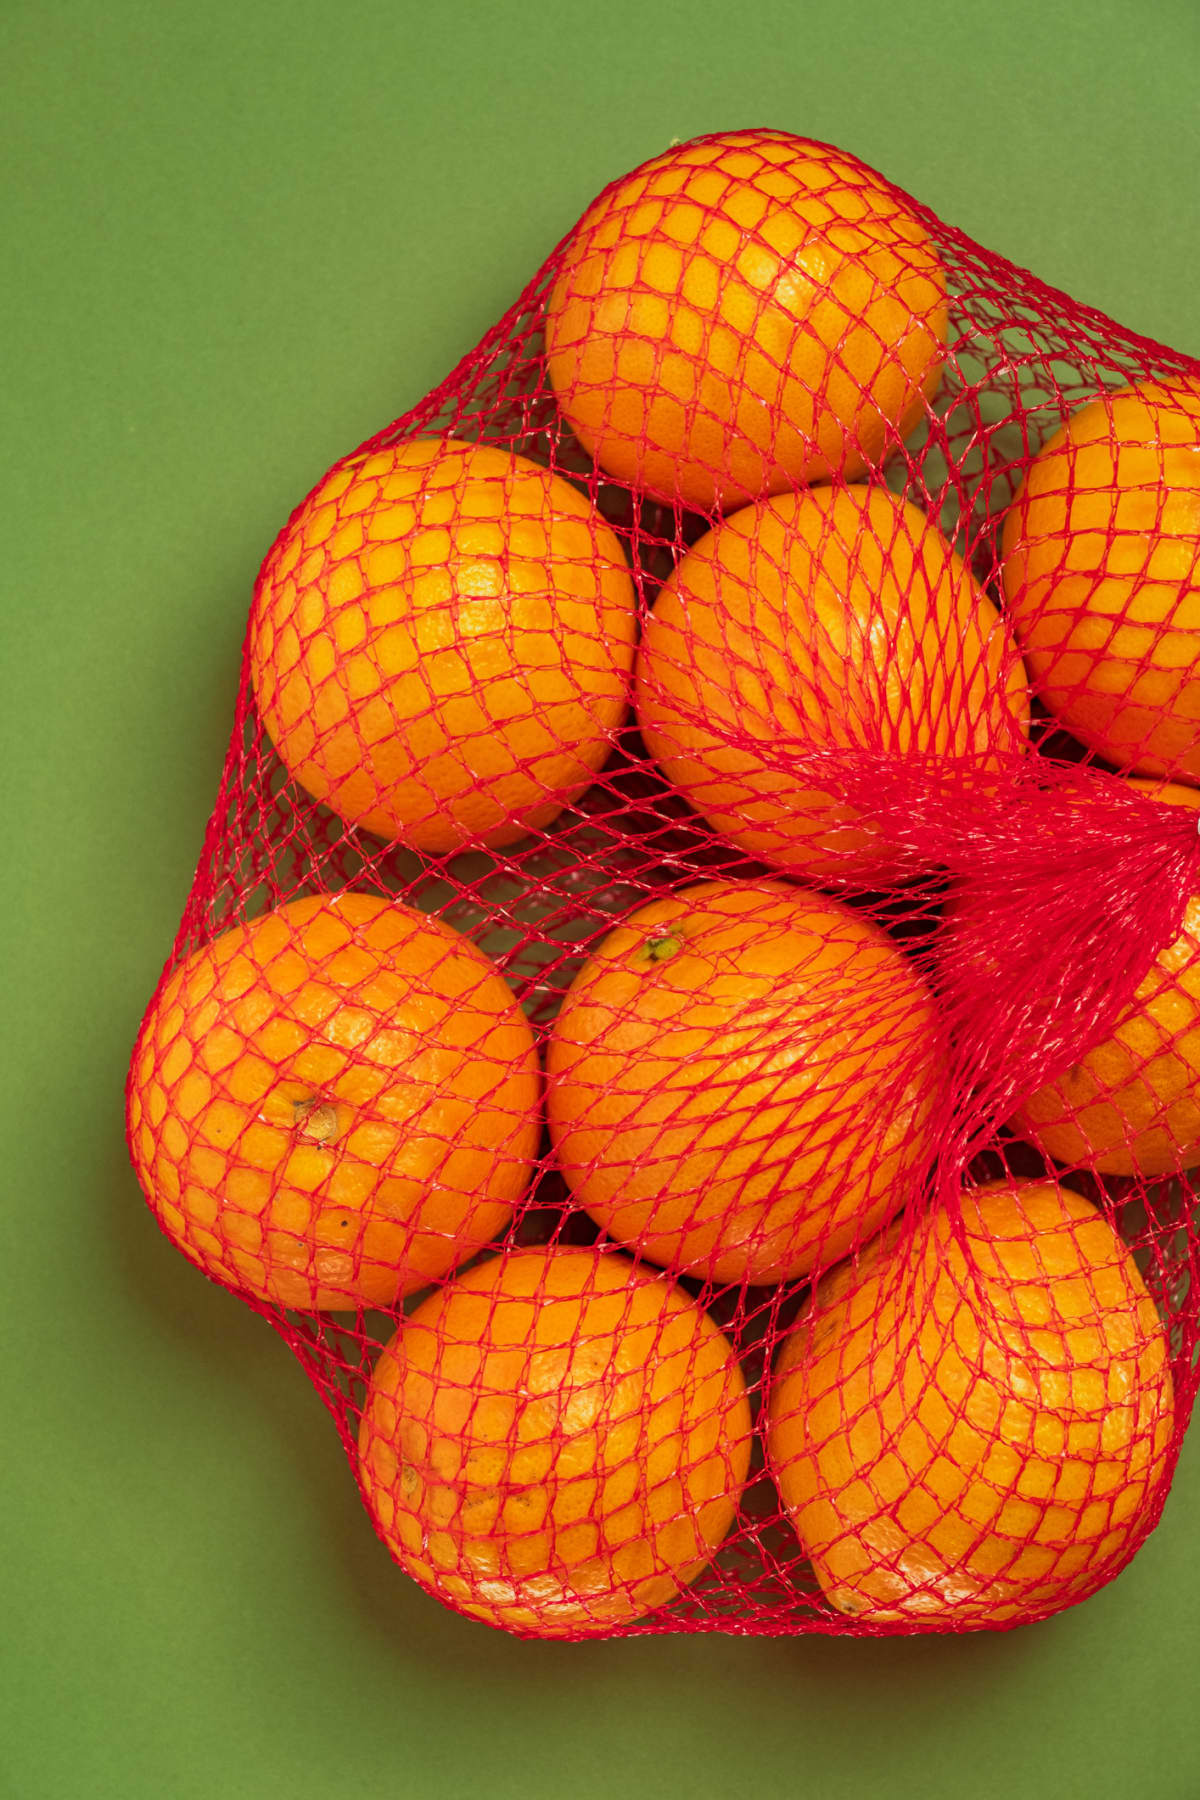 Oranges in red net packaging